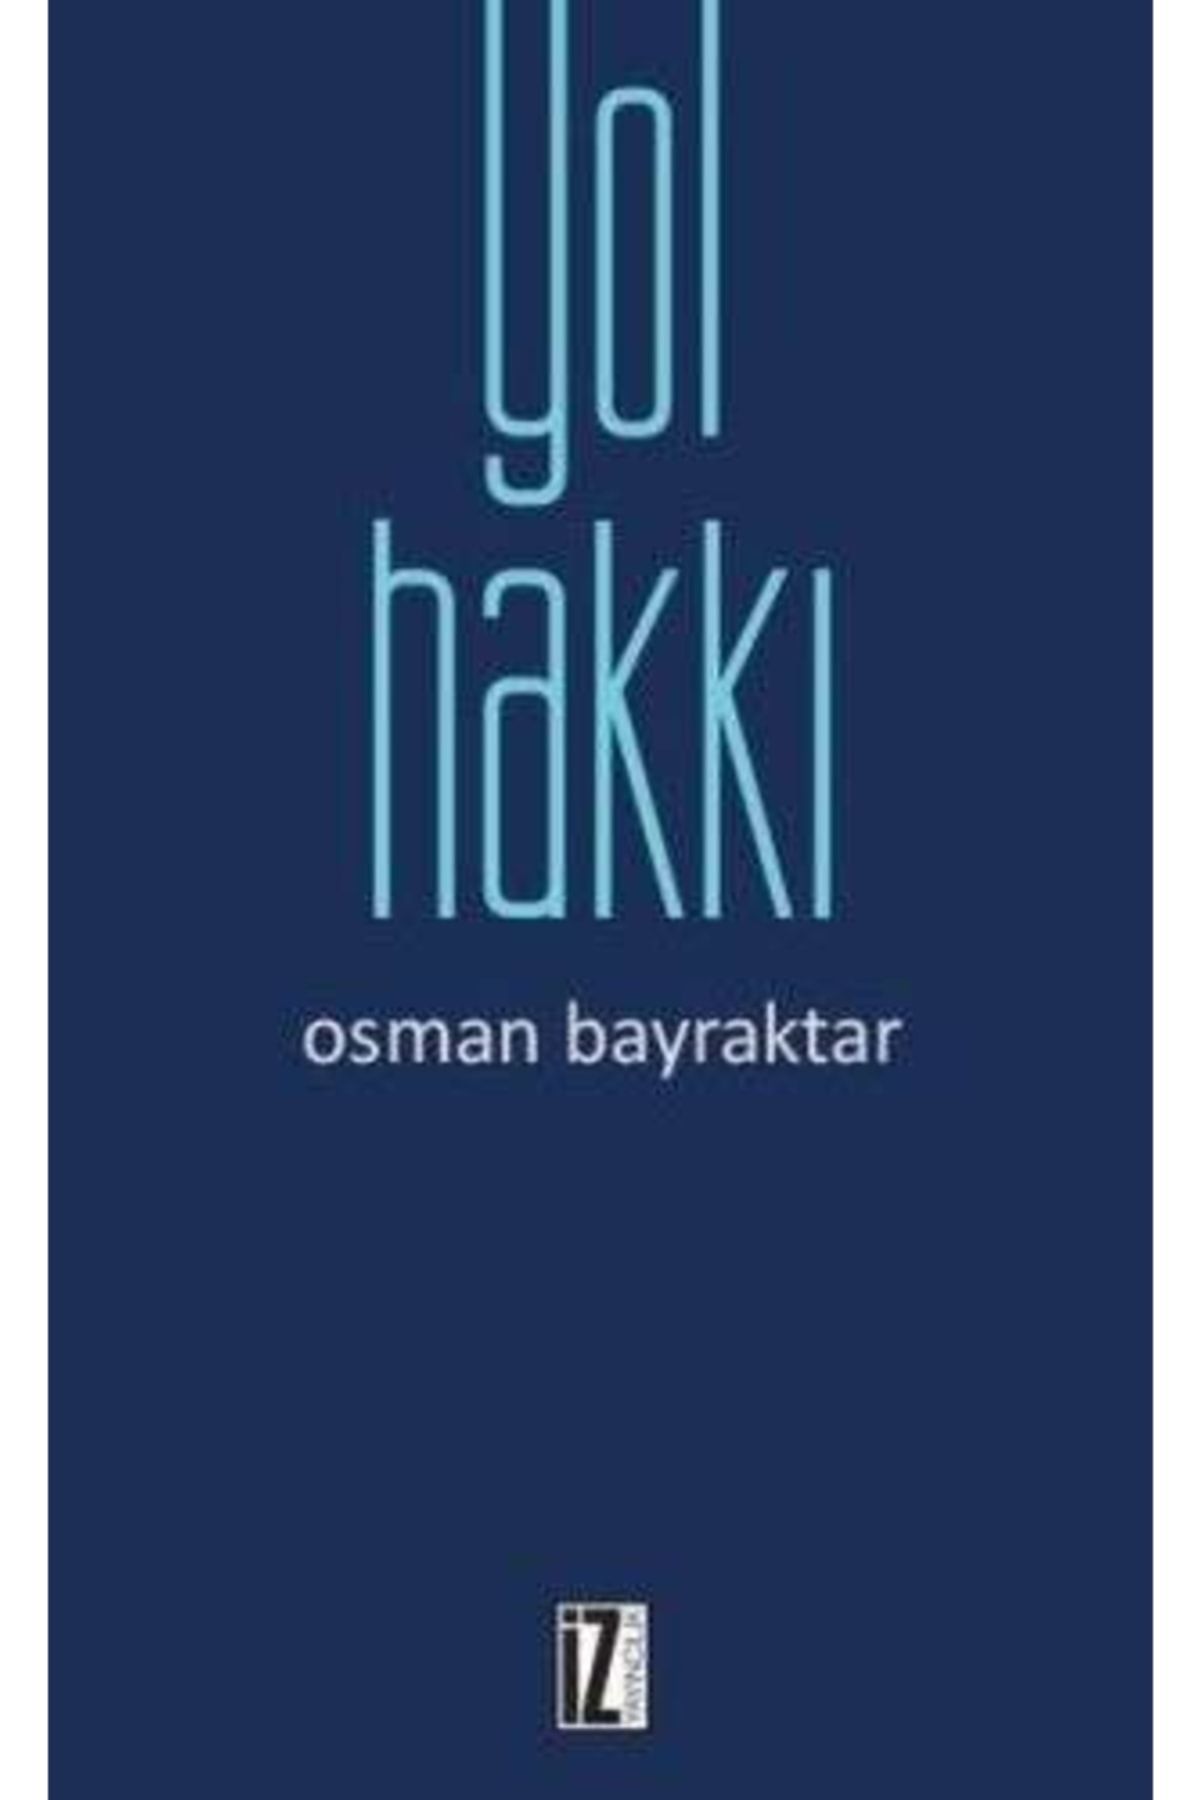 İz Yayıncılık Yol Hakkı Osman Bayraktar